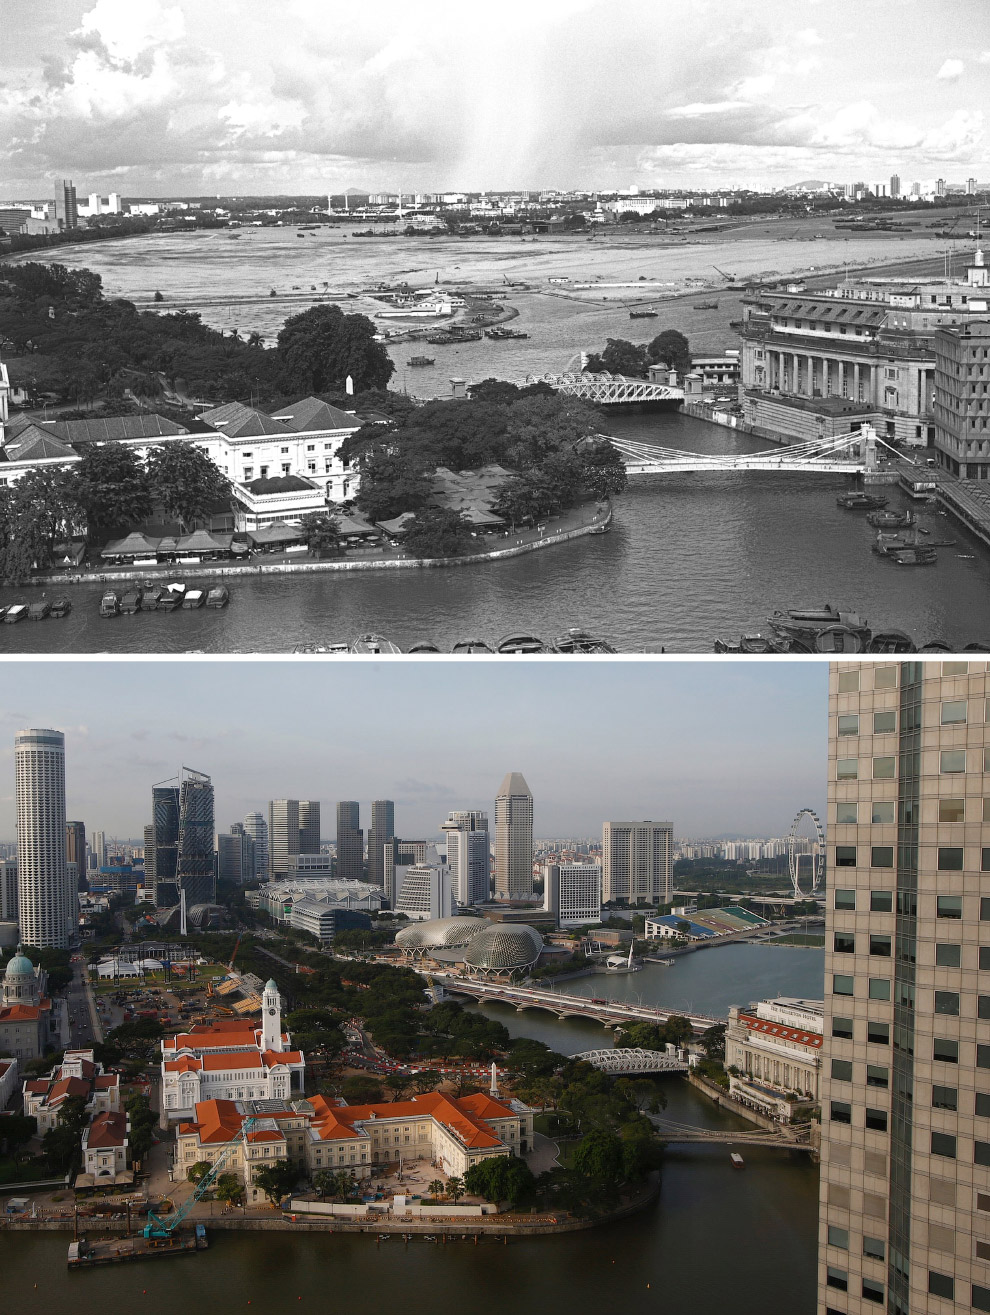 Сингапур: тогда и сейчас